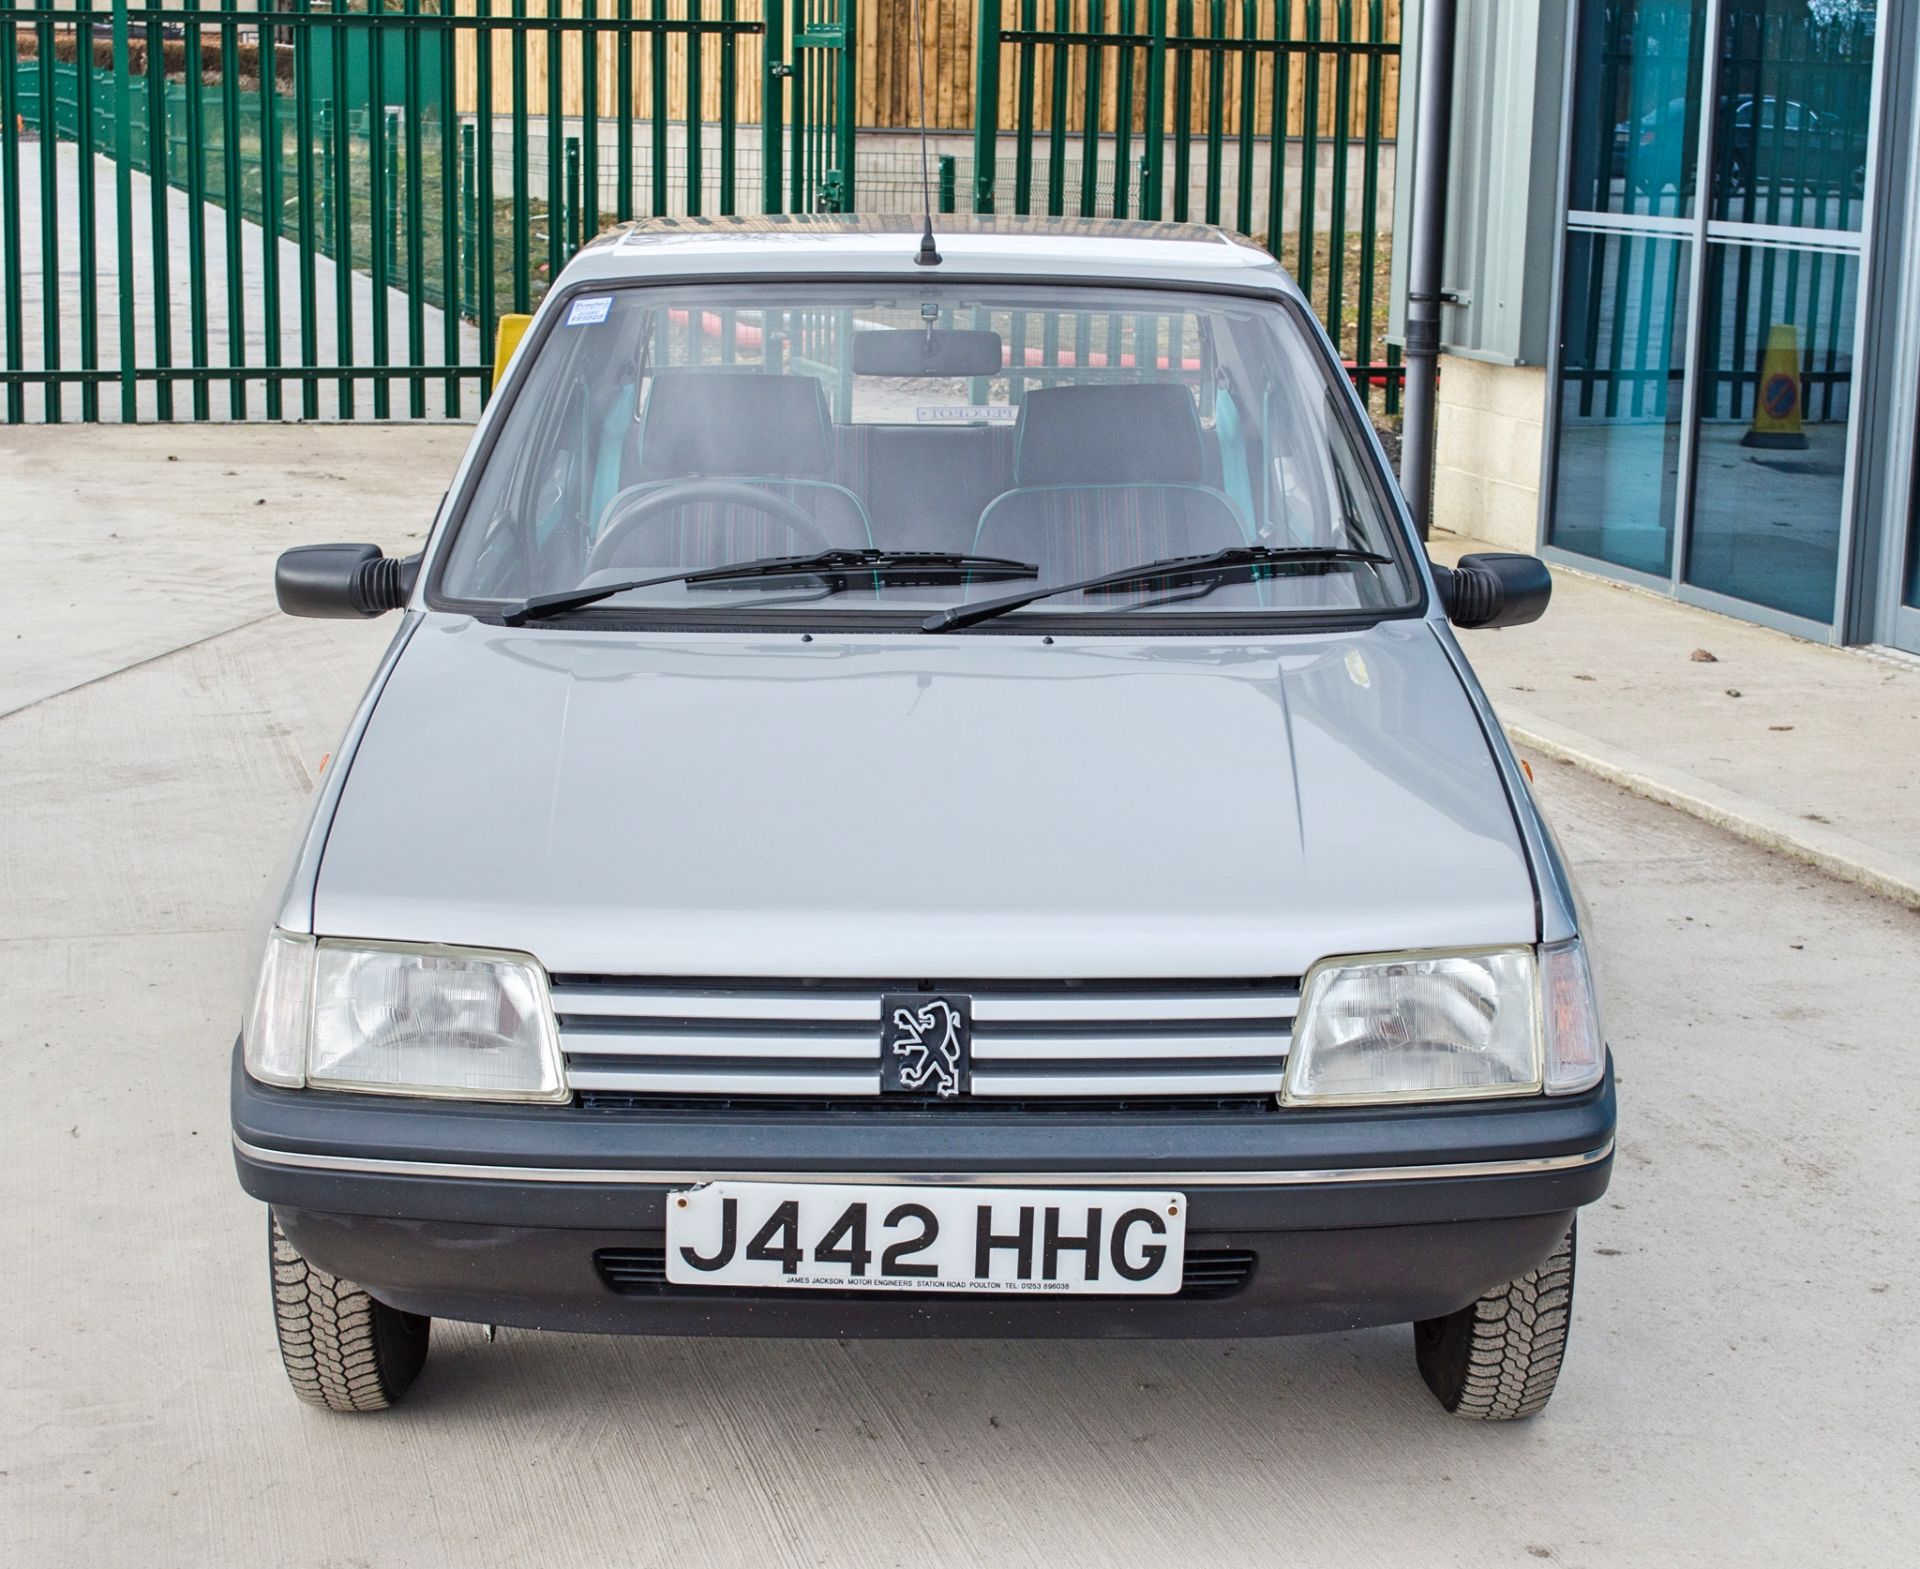 1991 Peugeot 205 954cc Trio 3 door hatchback - Image 10 of 55